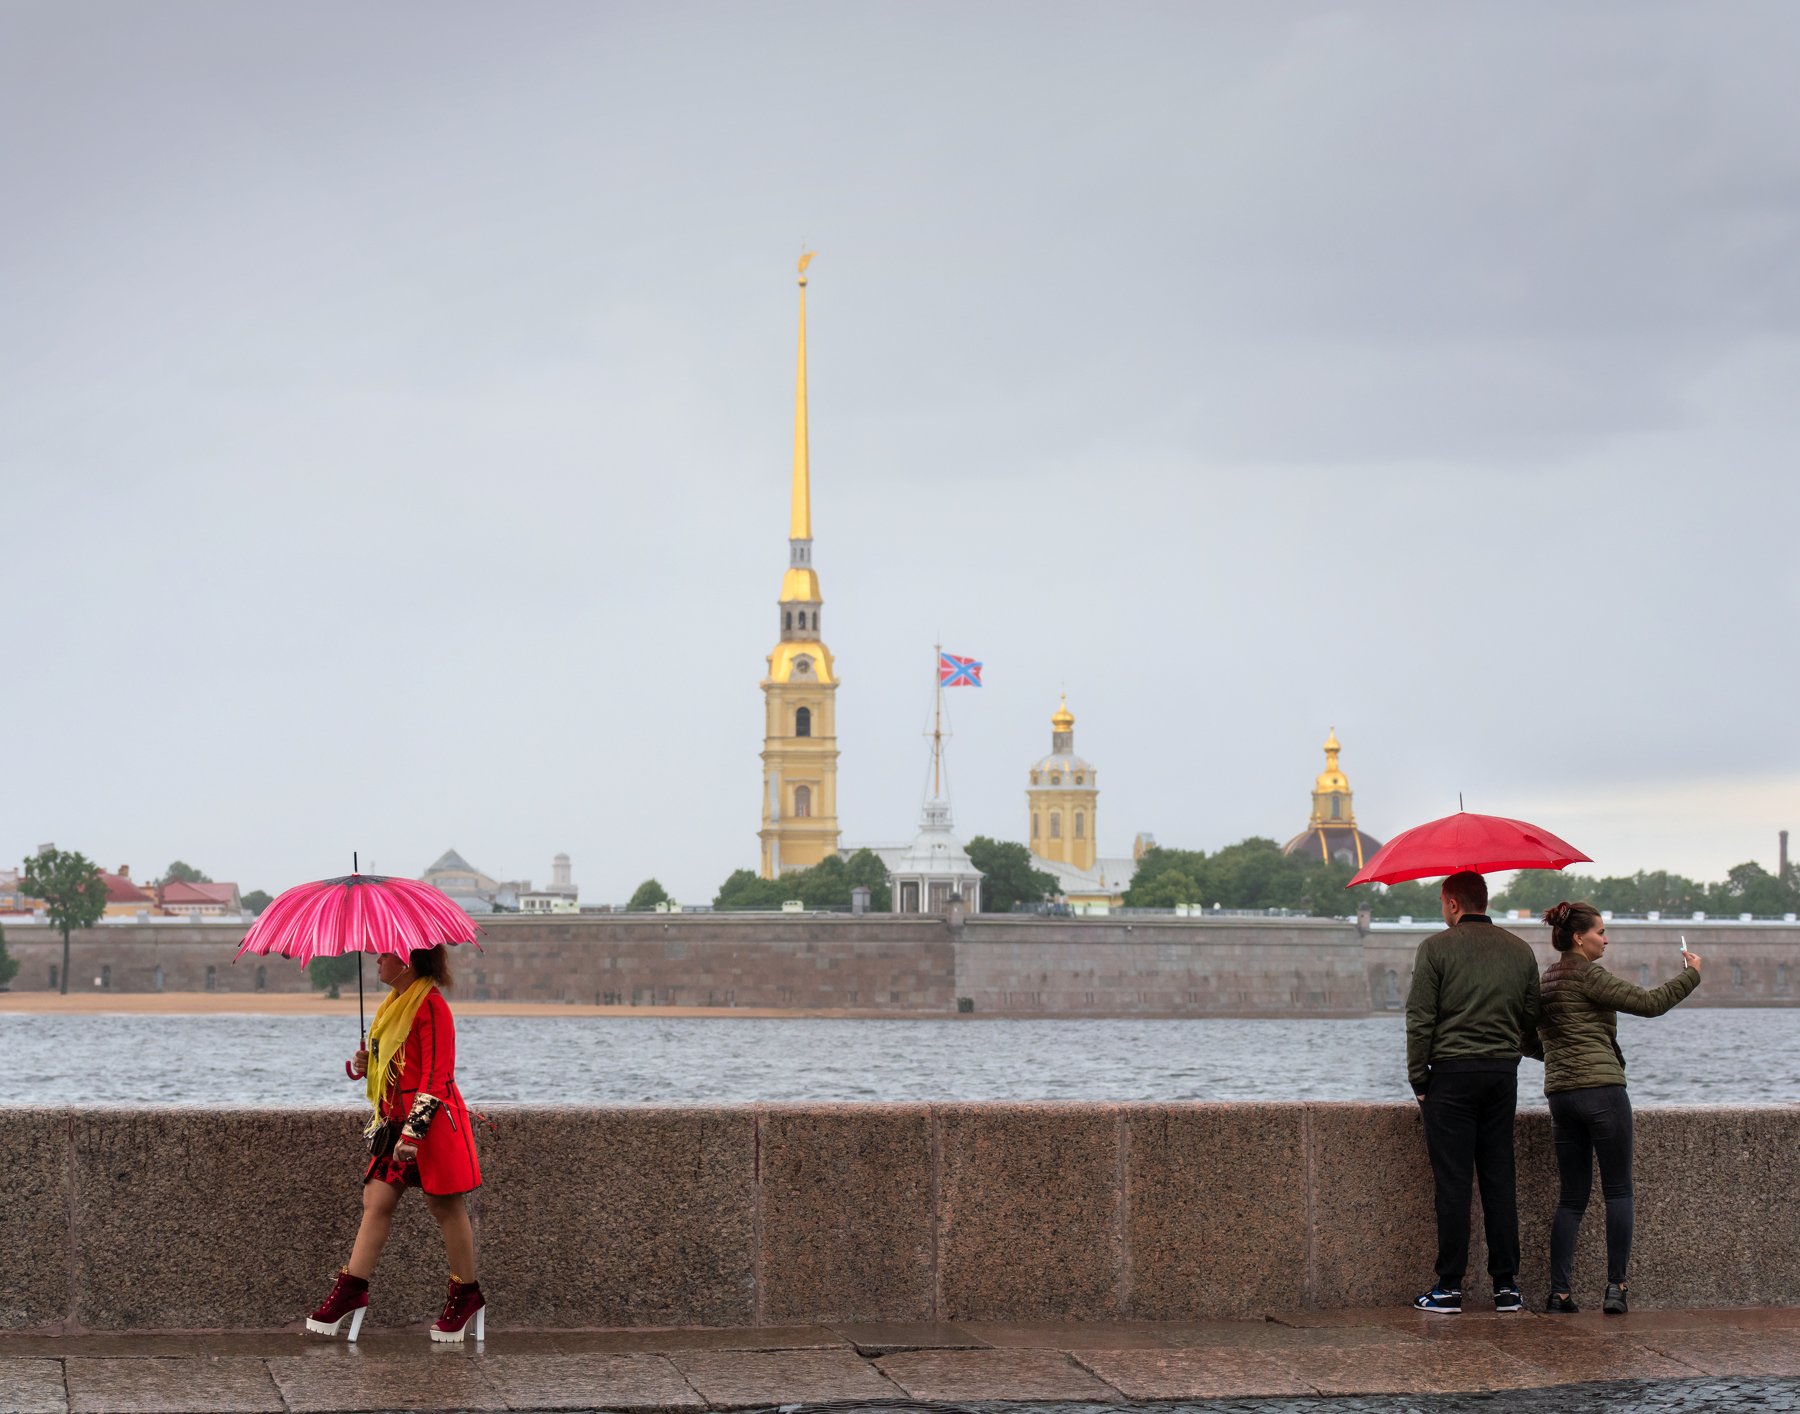 Нева, дождик, зонтики, набережная, красный, вода, Александр Рощин